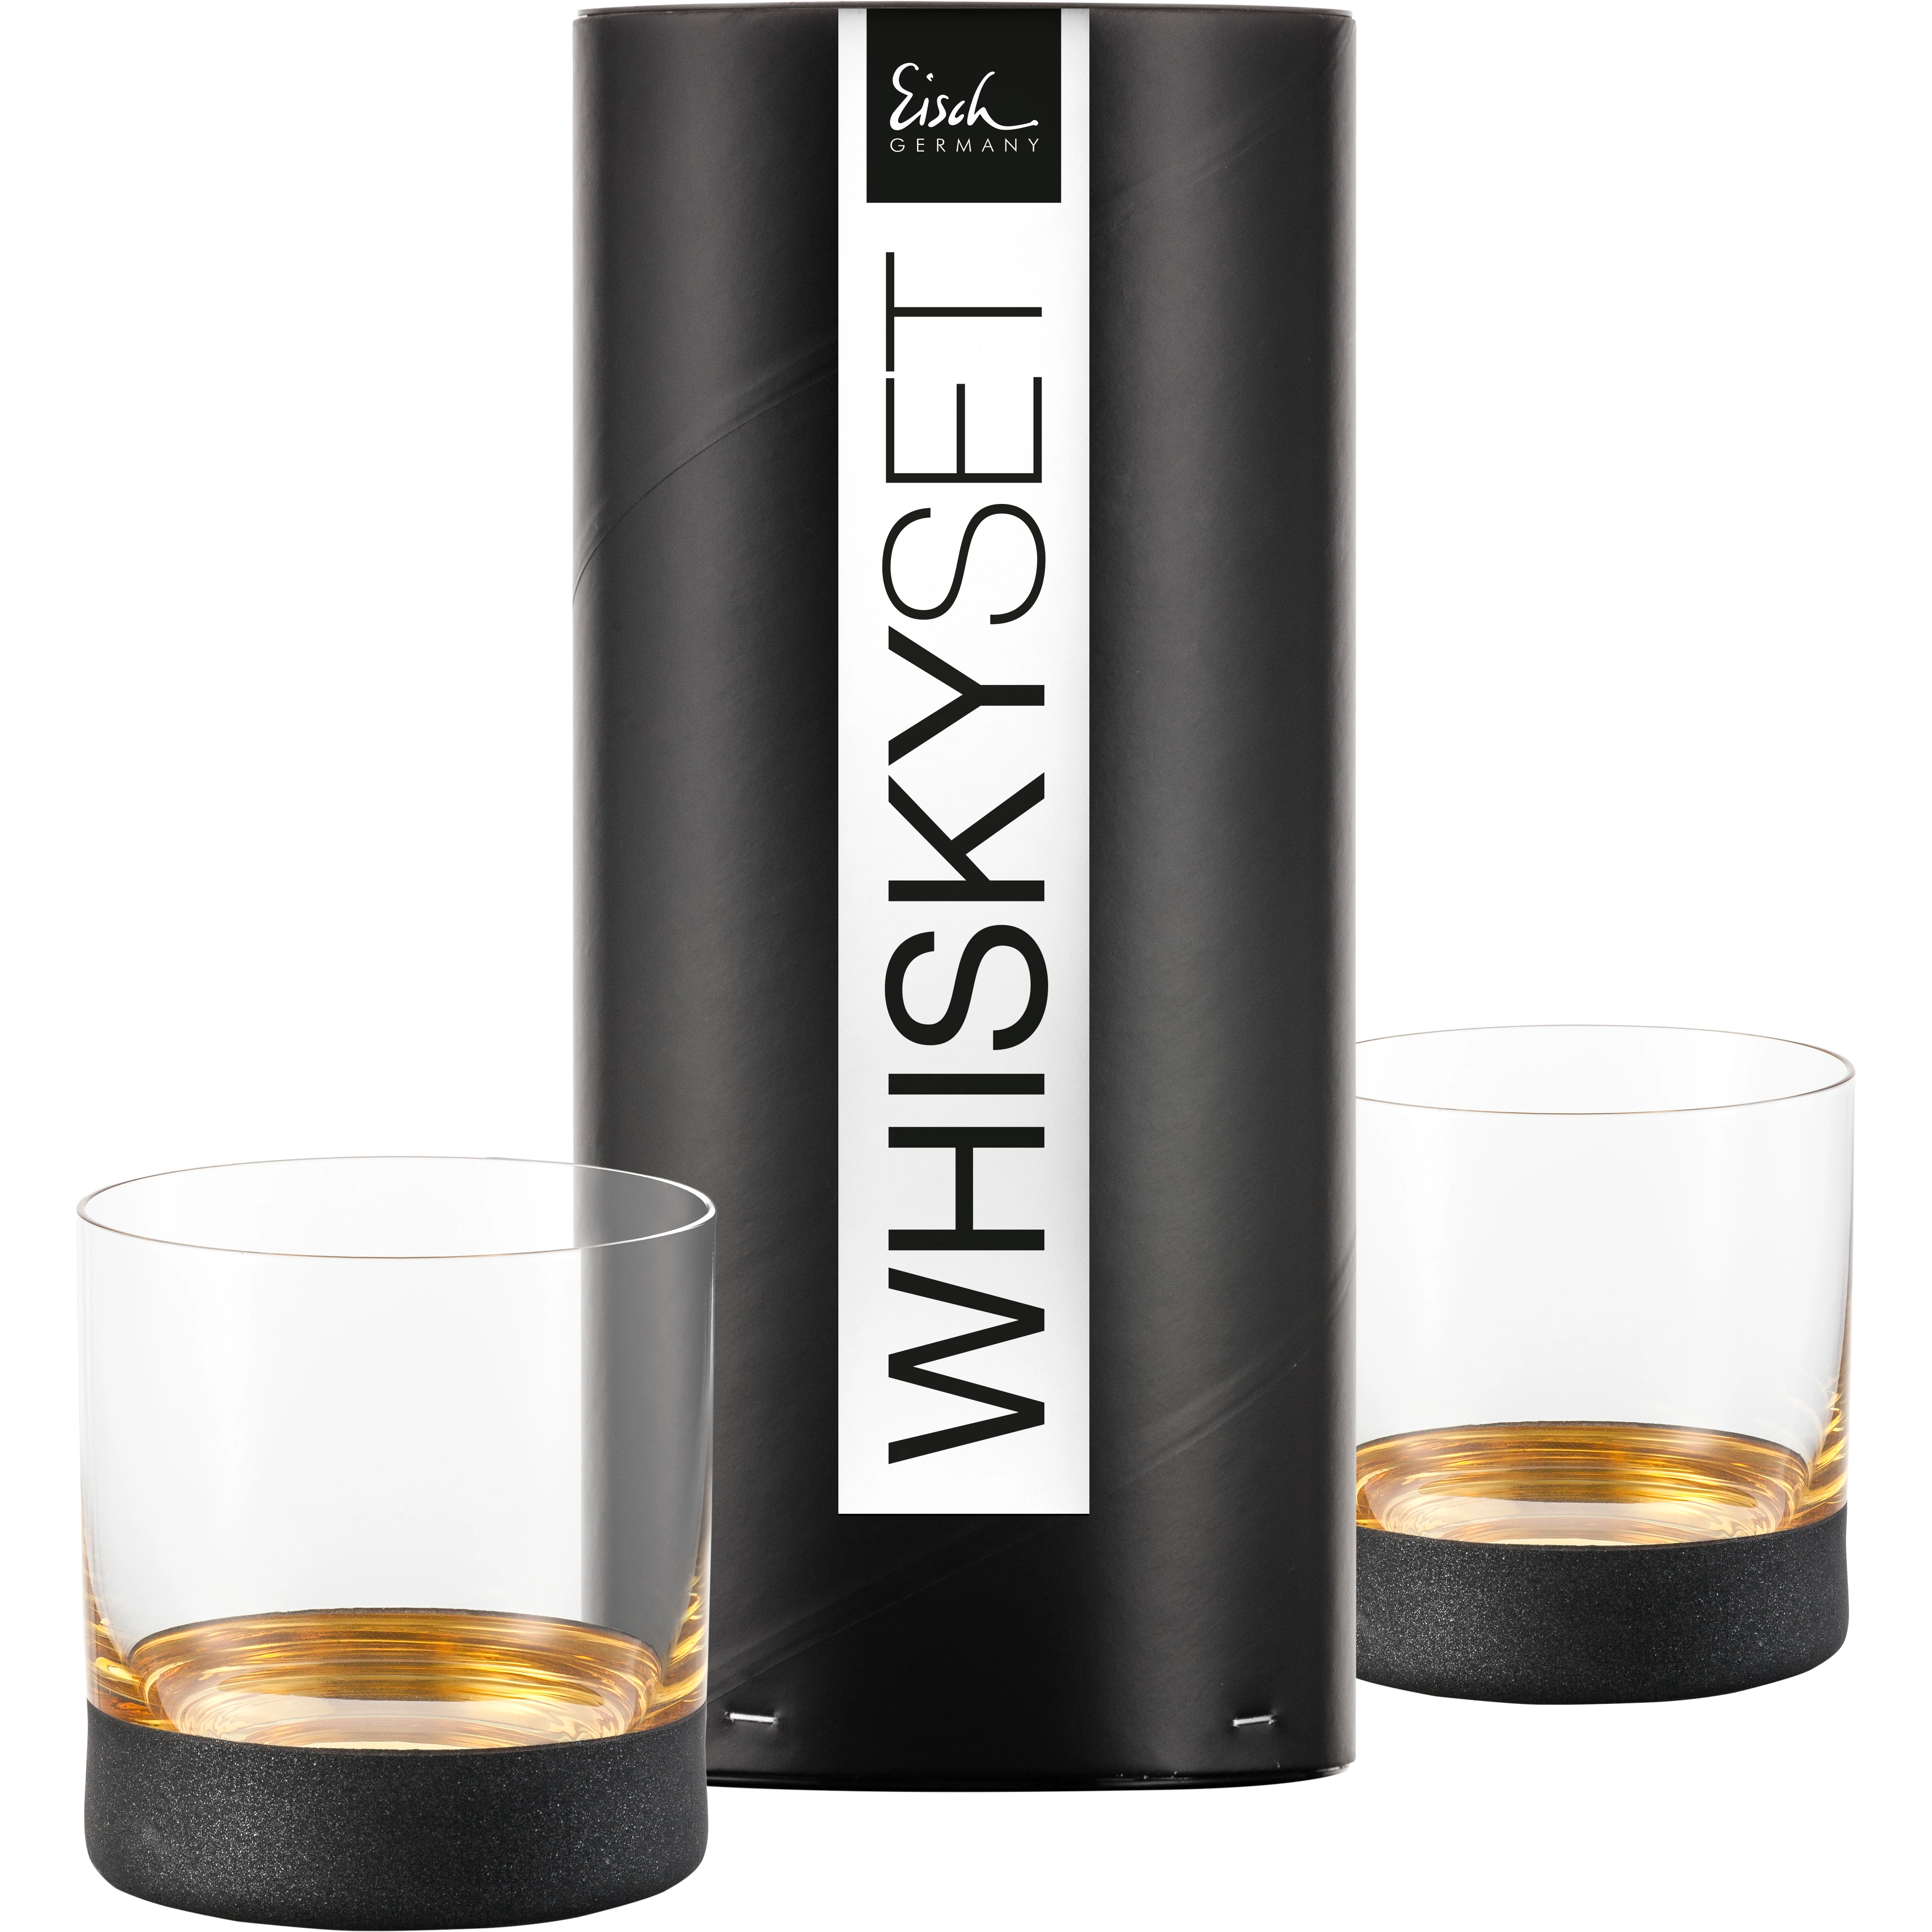 Eisch Whiskyglas Cosmo gold - 2 Stück in Geschenkröhre 500/14